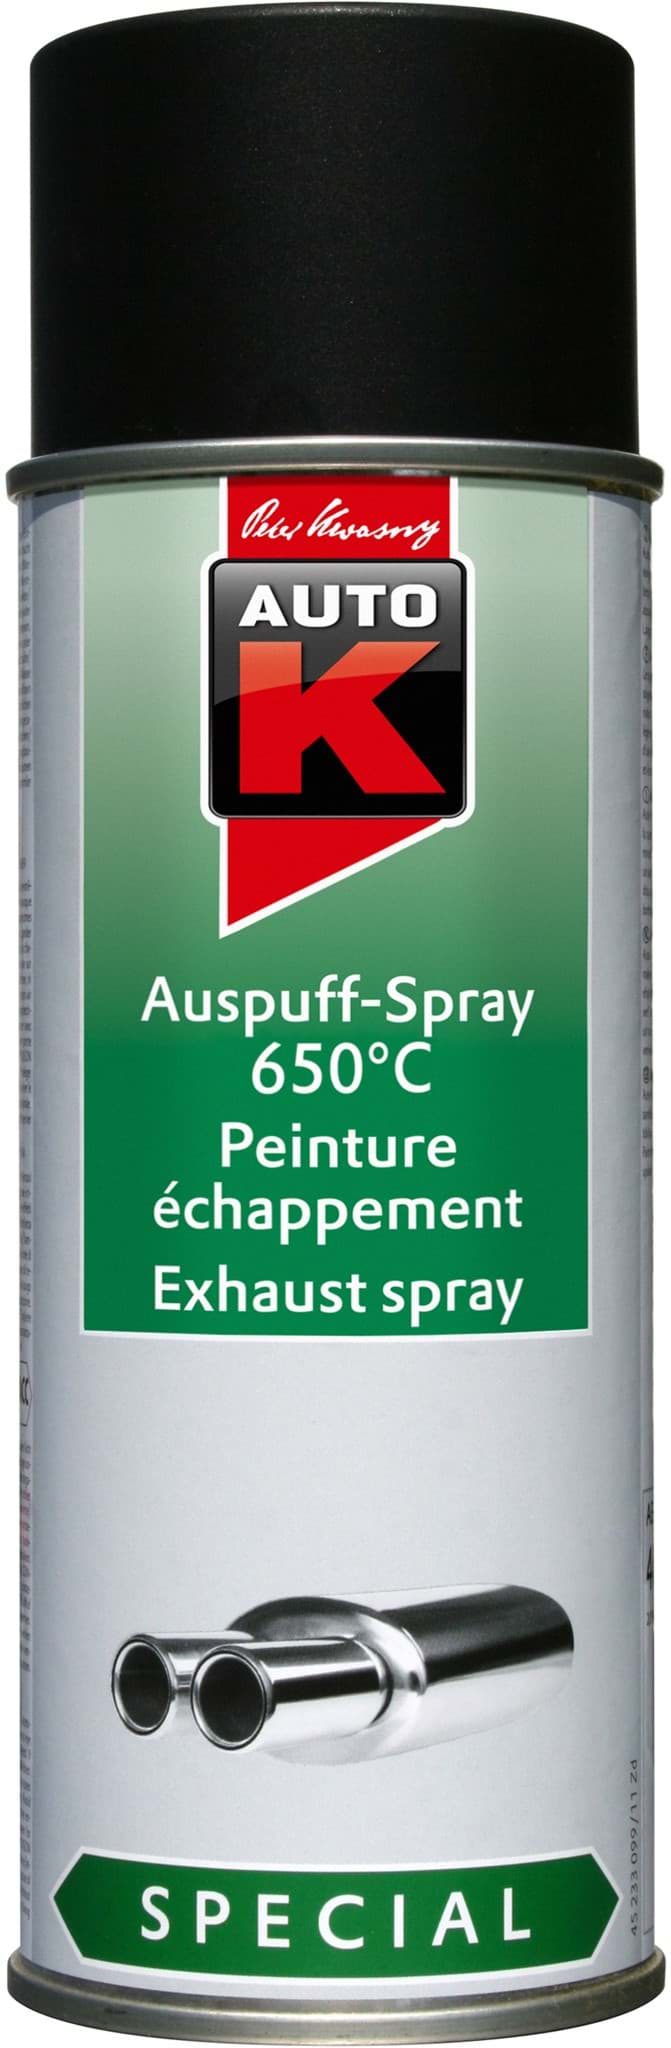 Afbeelding van AutoK Auspuff Spray 650C° schwarz 400ml 233099 